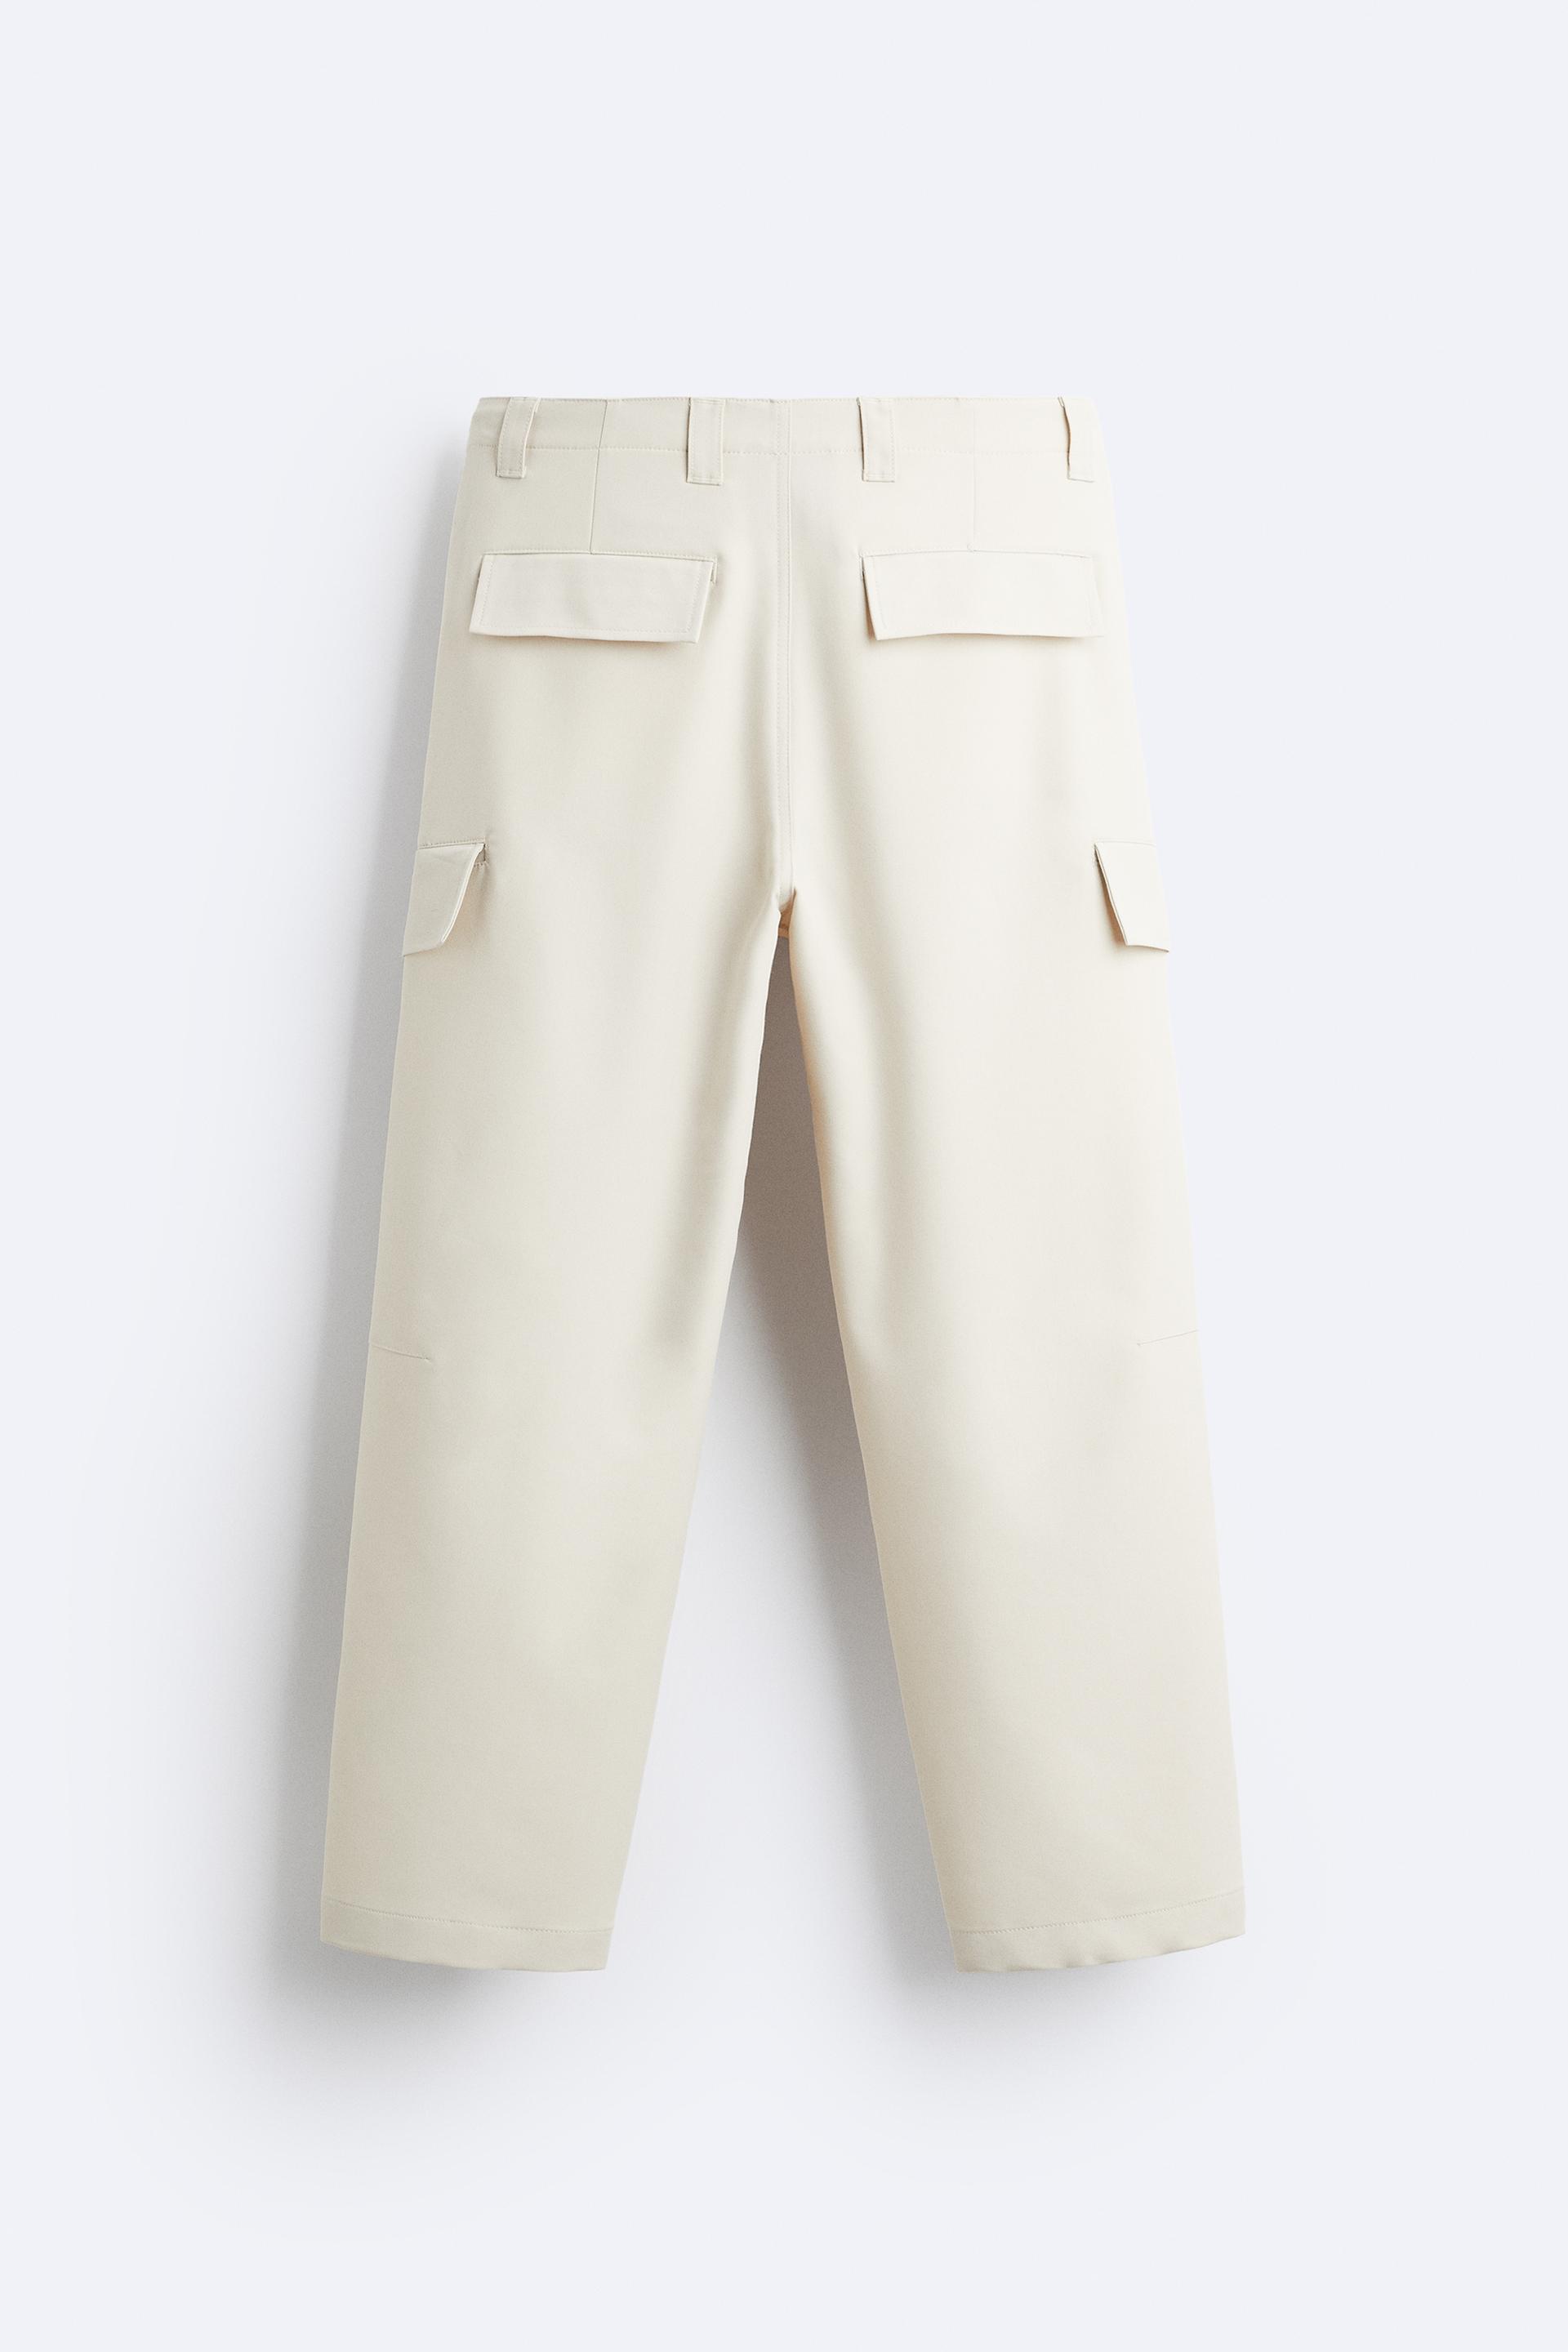 Zara Cargo Pants Trousers Wide Beige Size XS Bloggers Favorite